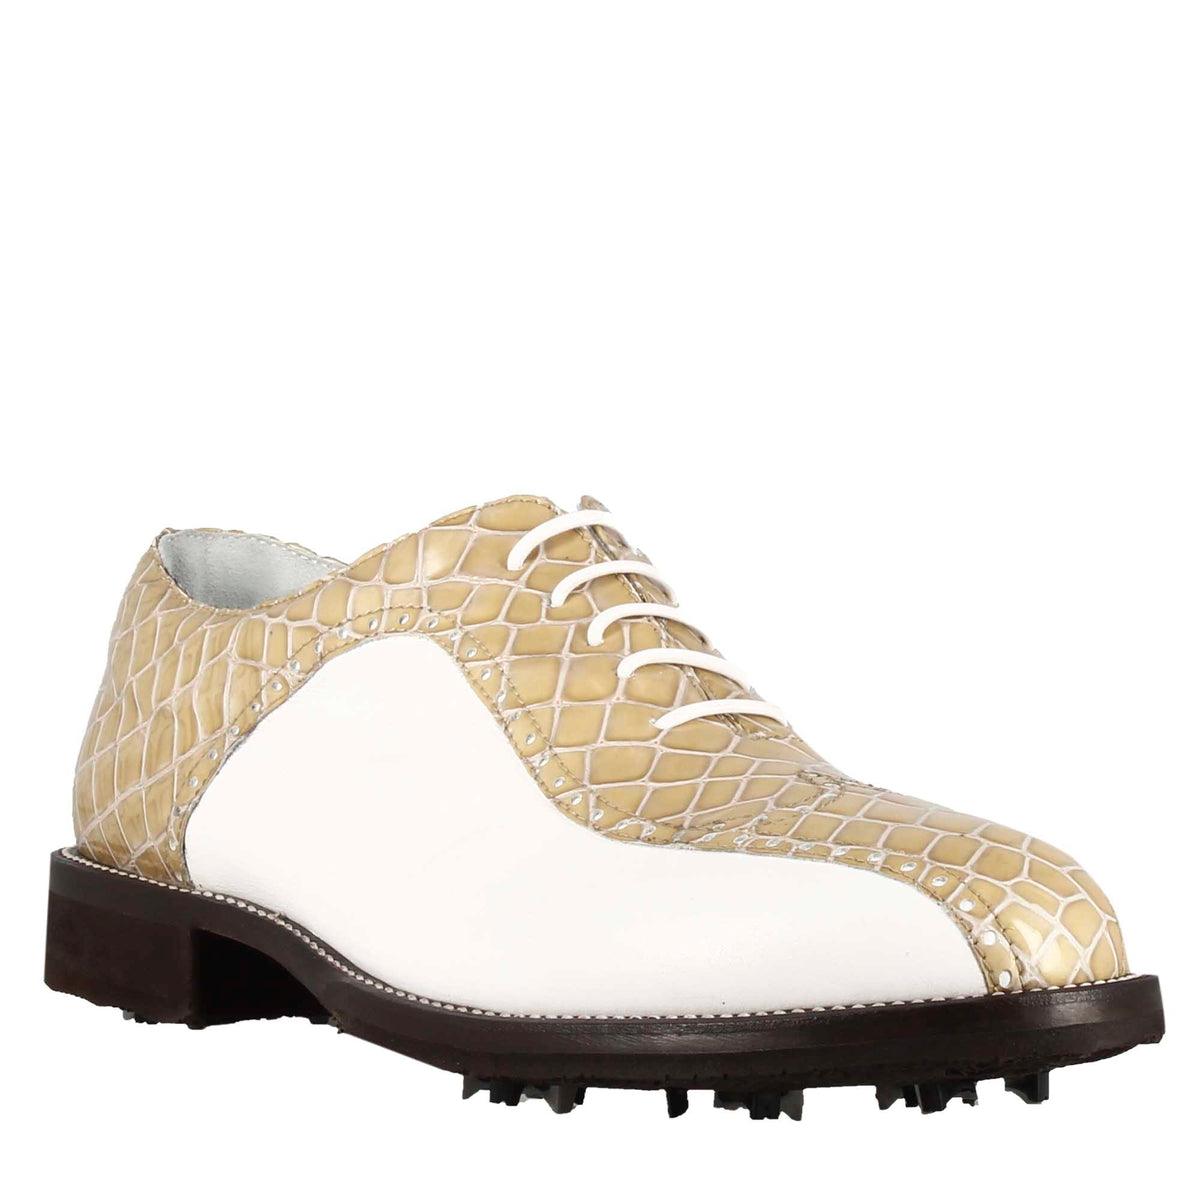 Scarpe da golf donna in pelle bicolore bianca e beige con stampa cocco